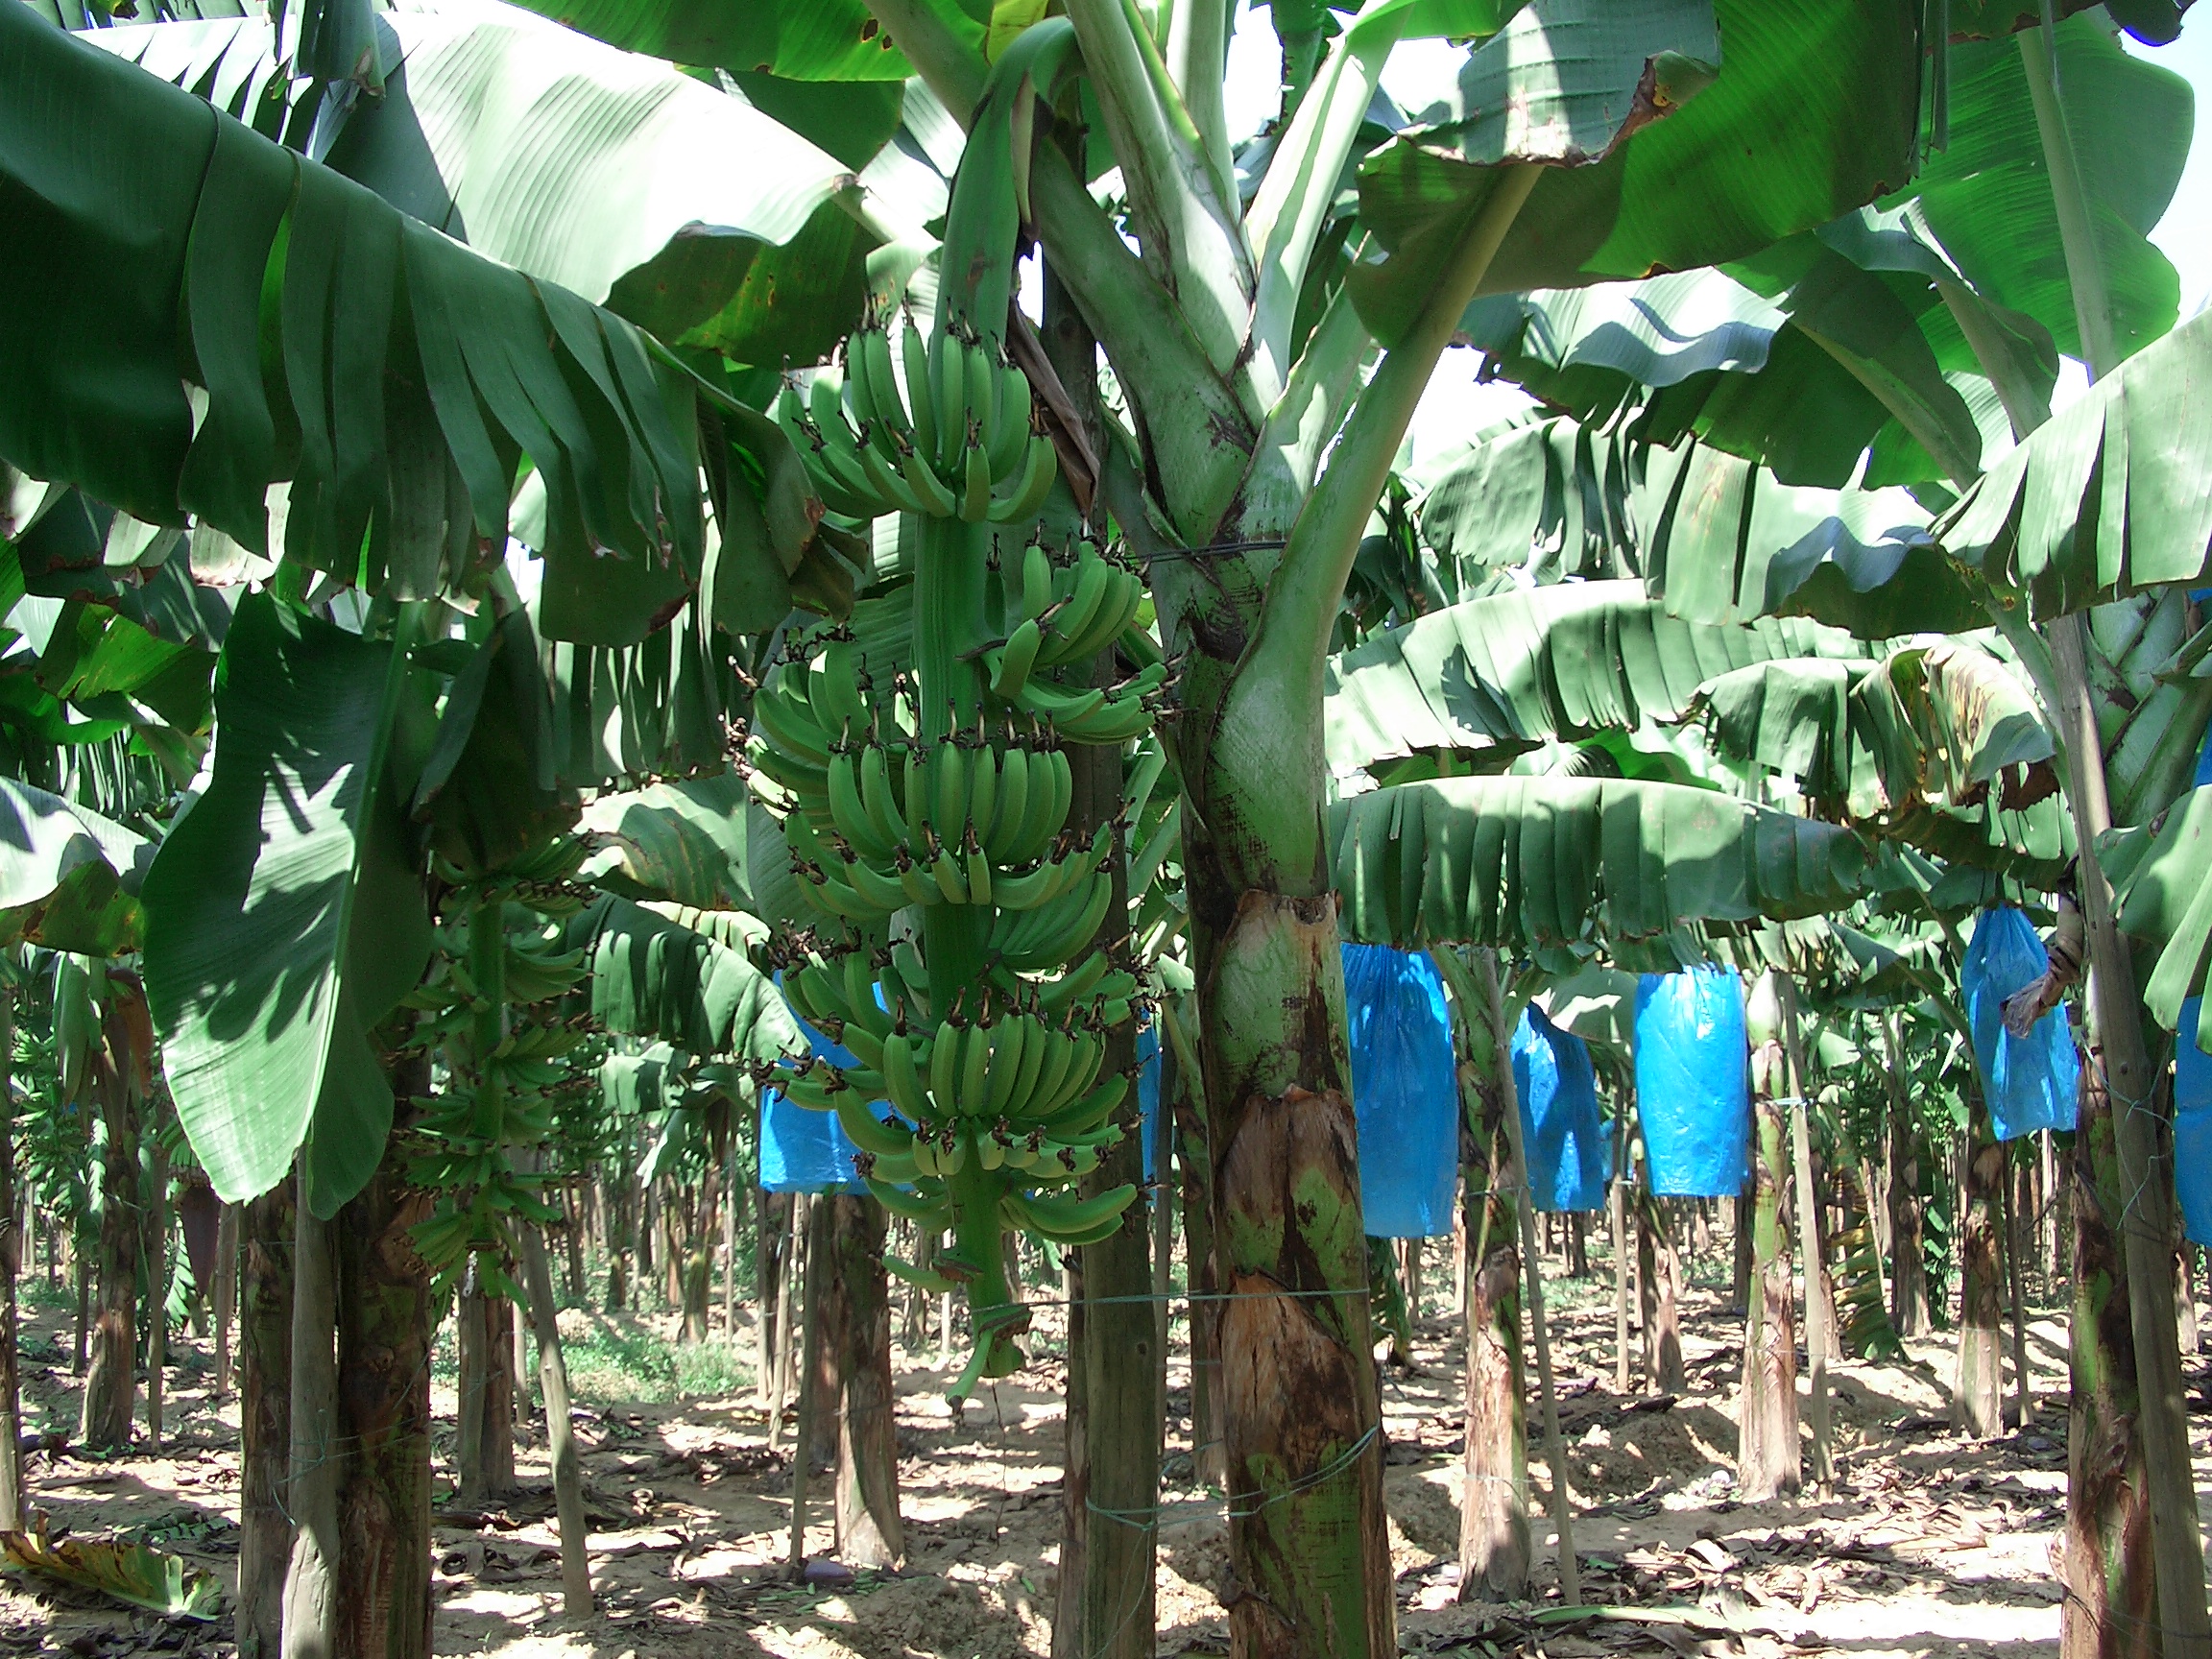 制造商转投香蕉业 首次收成即迎丰收 - 农牧世界